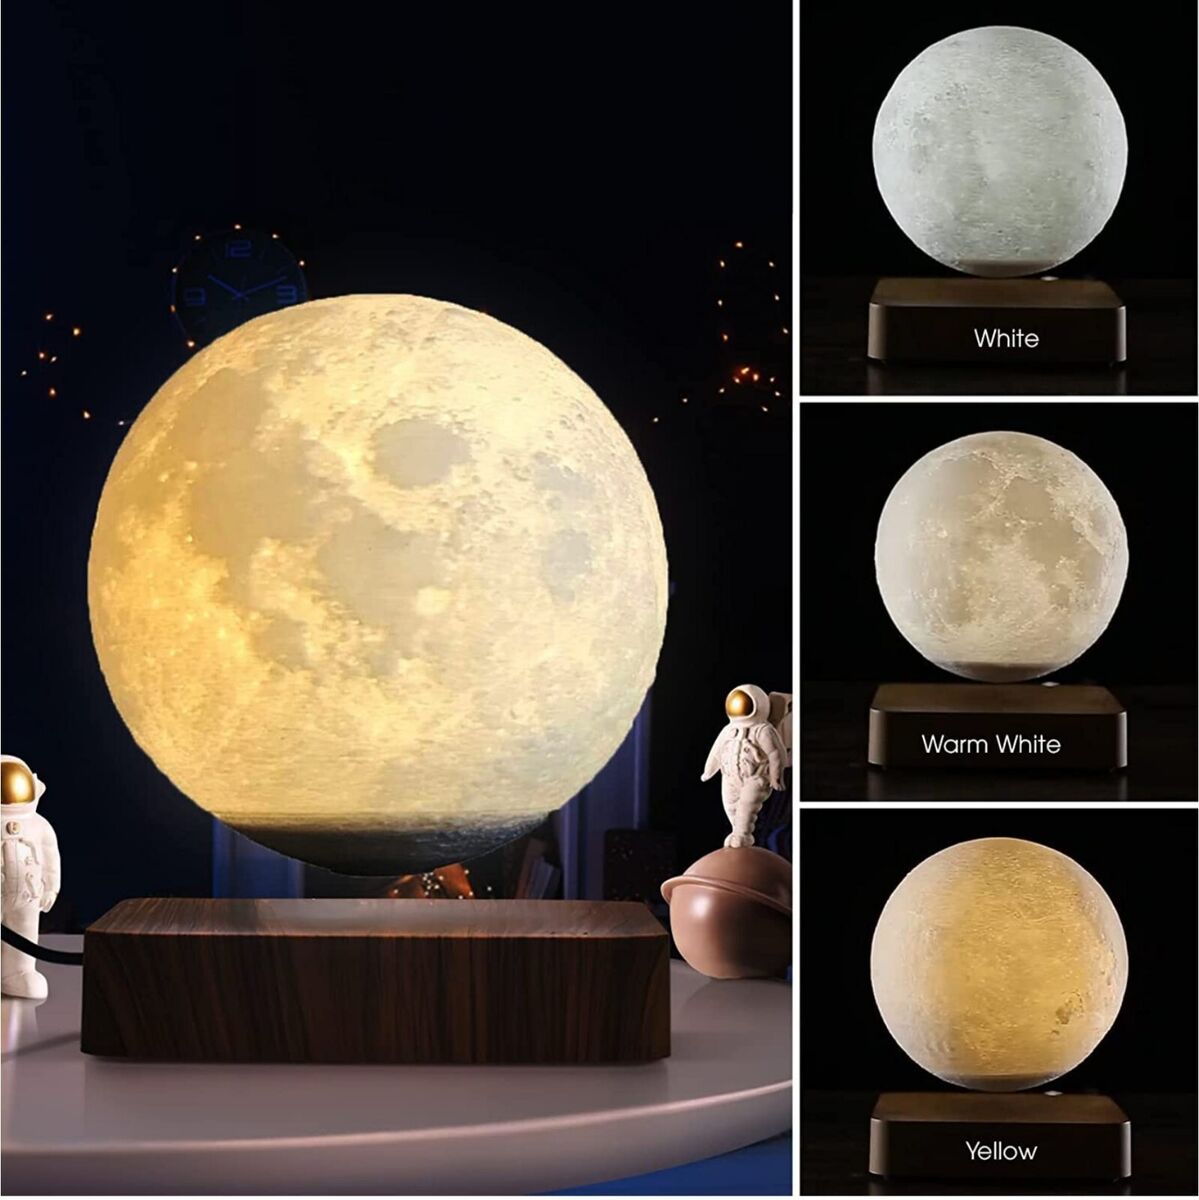 Tap forgænger Bevidstløs Levitating Moon Lamp, Magnetic Floating Moon Lamp Spinning Luna Night Light  with | eBay